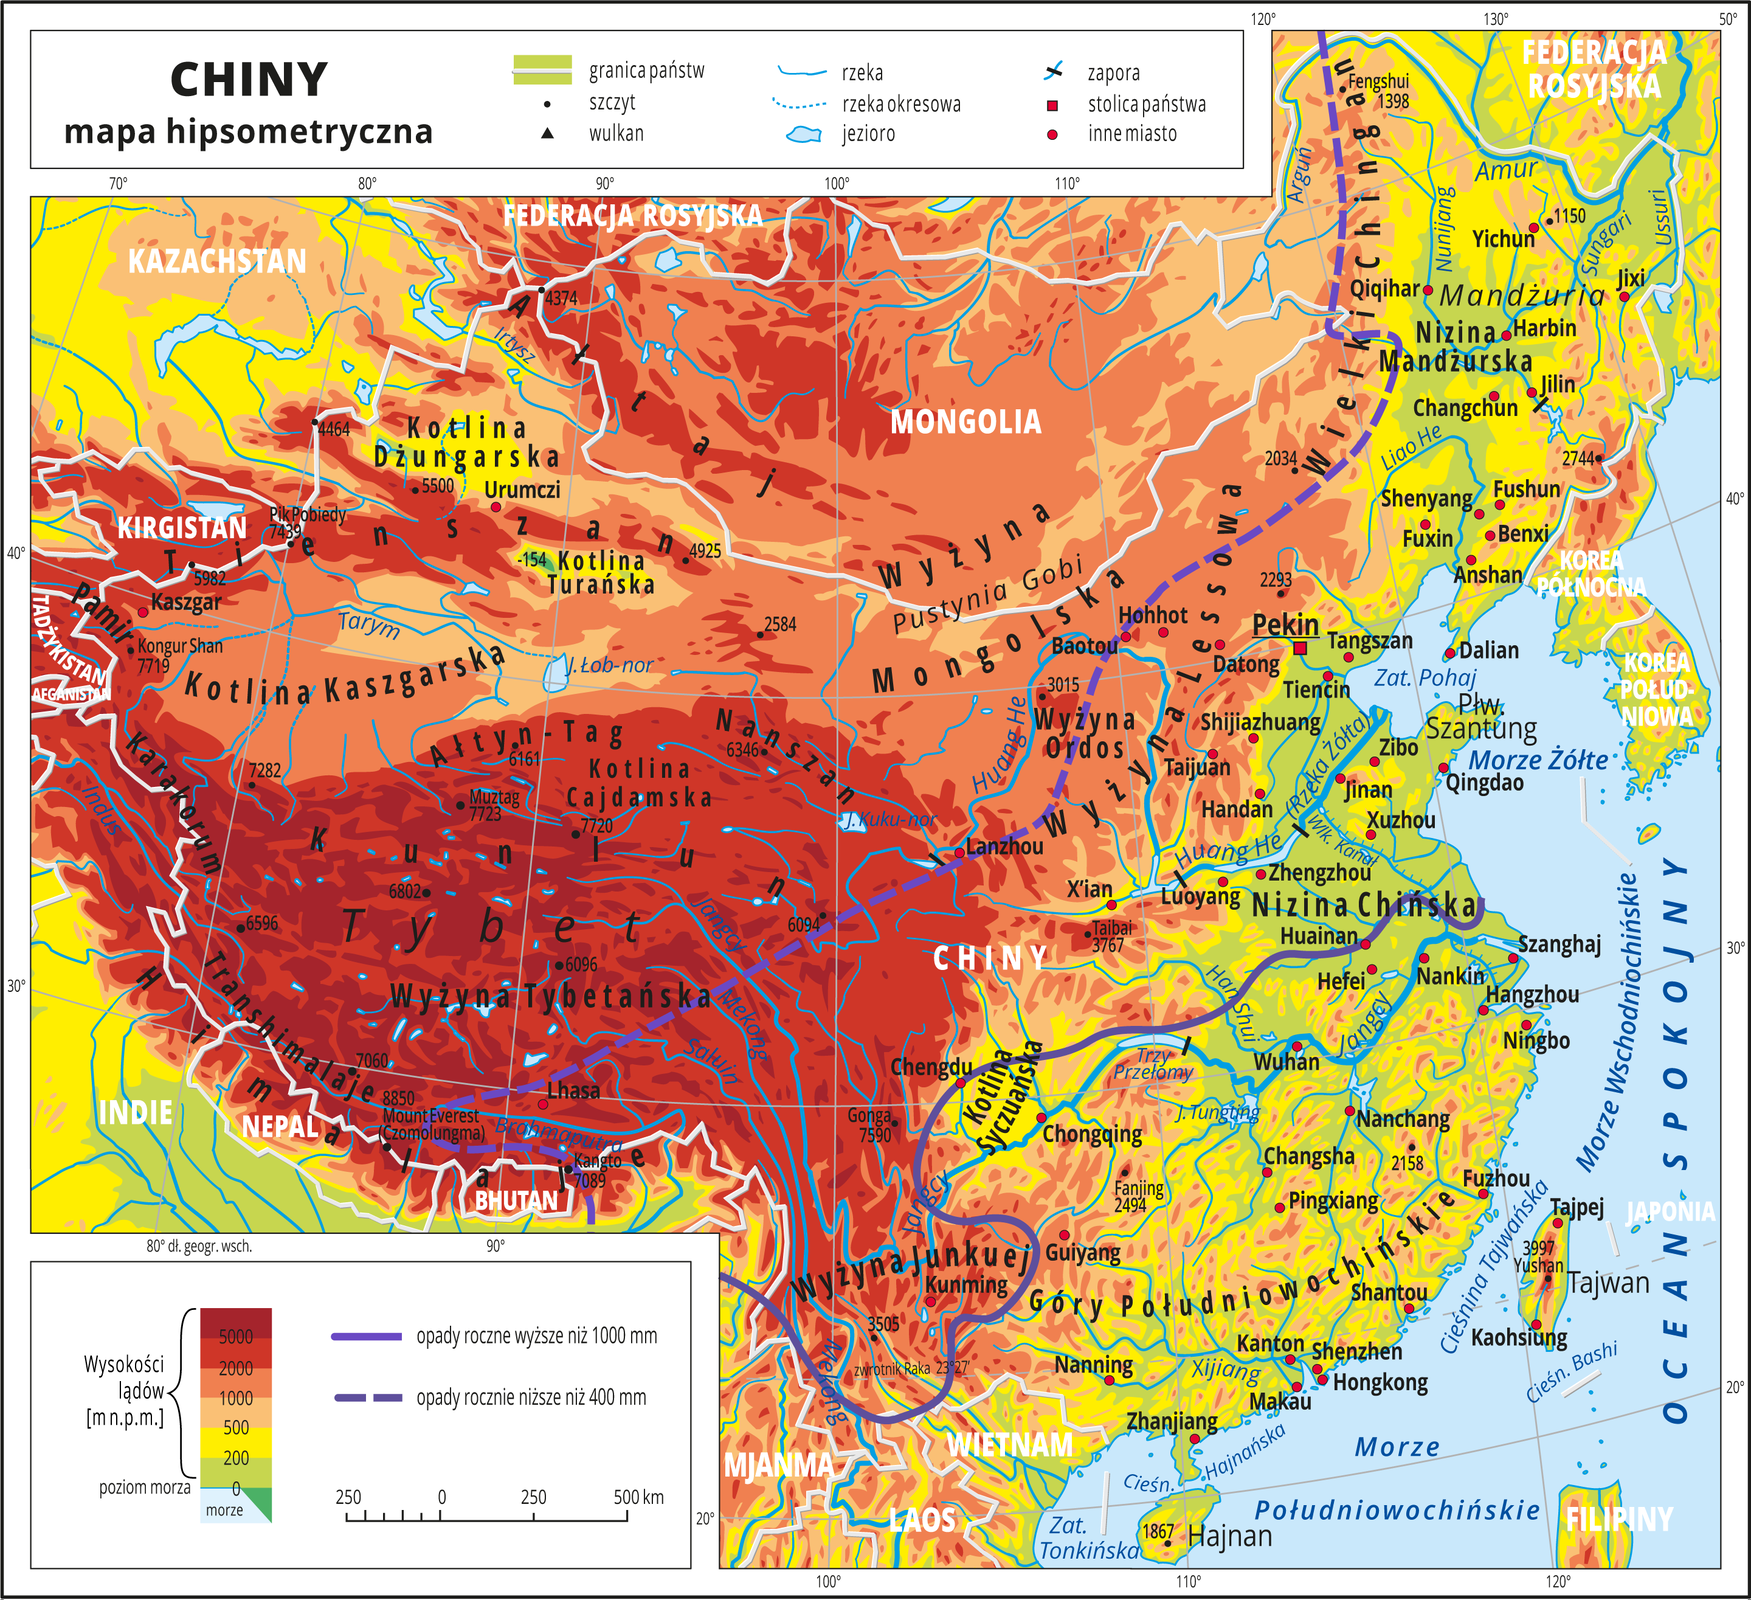 Ilustracja przedstawia mapę hipsometryczną Chin. W obrębie lądów występują obszary w kolorze zielonym, żółtym, pomarańczowym i czerwonym. Przeważają wyżyny i góry. Morza zaznaczono kolorem niebieskim. Na mapie opisano nazwy półwyspów, wysp, nizin, wyżyn i pasm górskich, mórz, zatok, rzek i jezior. Oznaczono i opisano stolice i główne miasta. Oznaczono czarnymi kropkami i opisano szczyty górskie. Trójkątami oznaczono wulkany i podano ich wysokości. Na mapie poprowadzono linię wyznaczającą tereny o opadach rocznych wyższych niż 1000 milimetrów (na południowo‑wschodnim wybrzeżu) i linię przerywaną wyznaczającą obszary gdzie opady roczne są niższe niż 400 milimetrów (wyżyny i góry we wnętrzu kontynentu). Mapa pokryta jest równoleżnikami i południkami. Dookoła mapy w białej ramce opisano południki i równoleżniki co dziesięć stopni. W legendzie umieszczono i opisano znaki użyte na mapie.